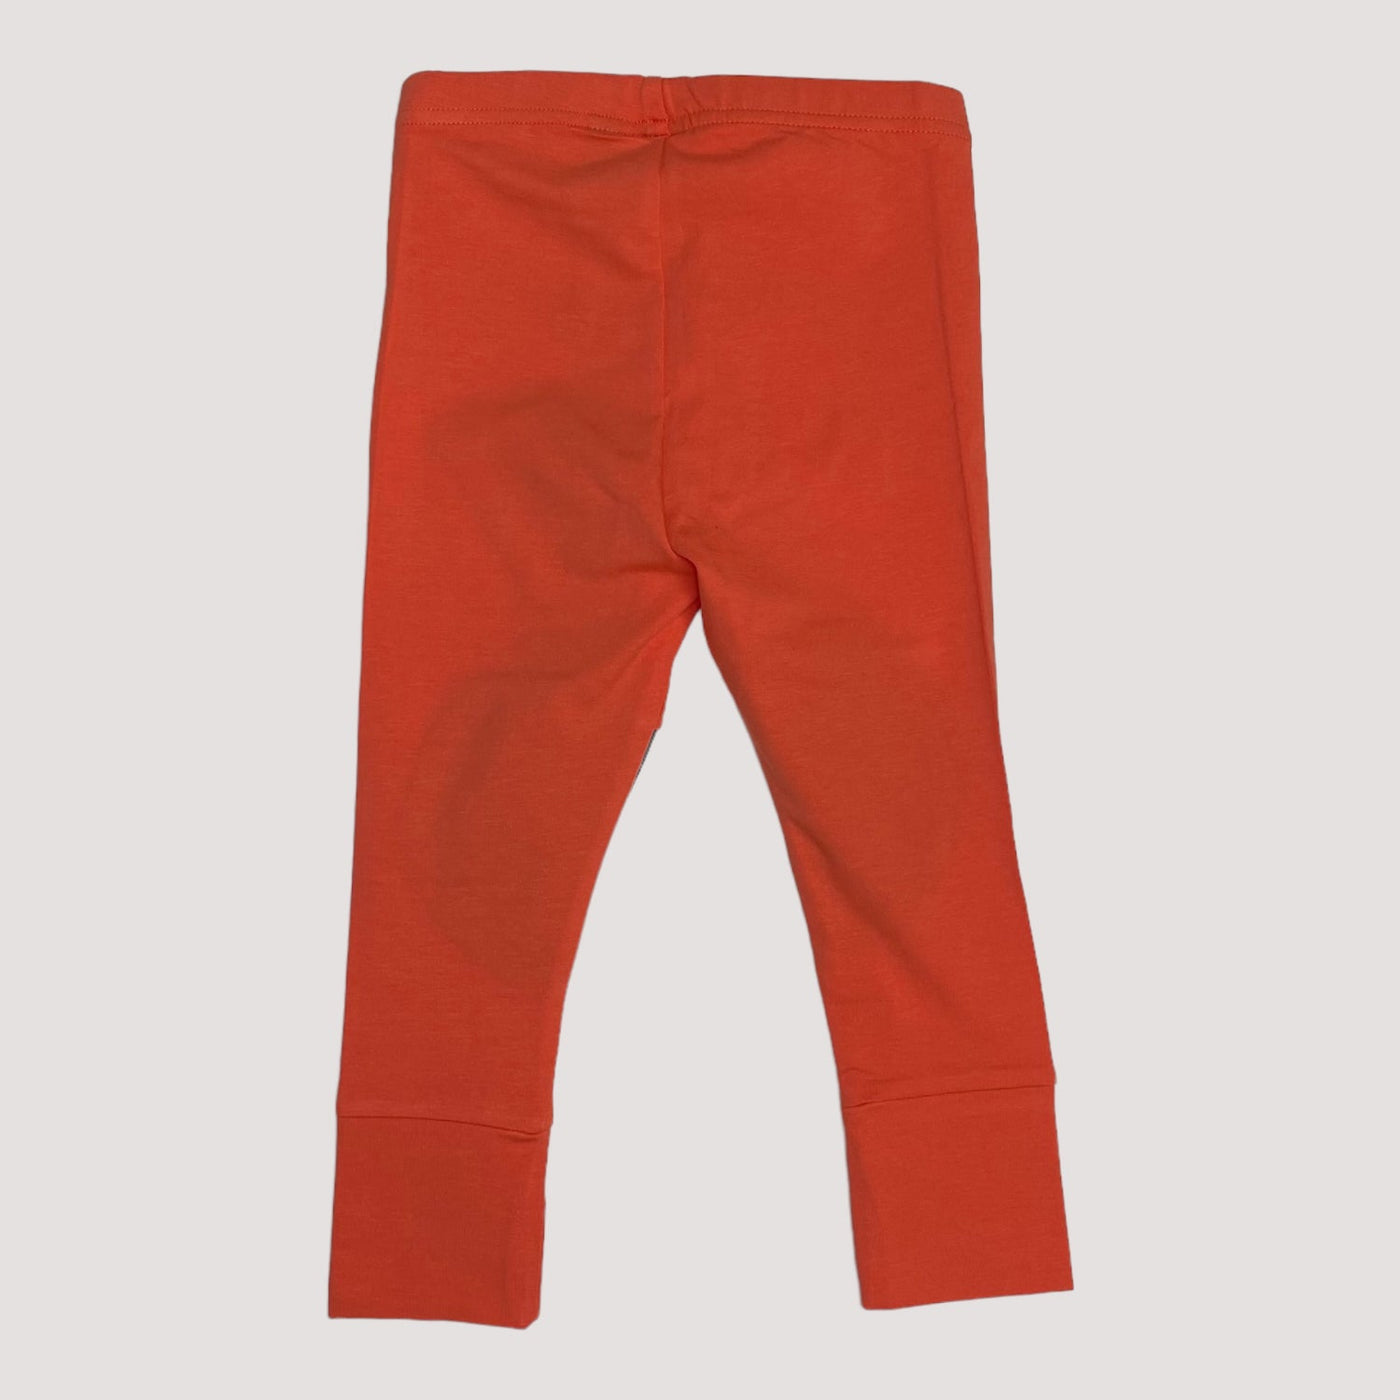 patch leggings, scream red/black | 74/80cm